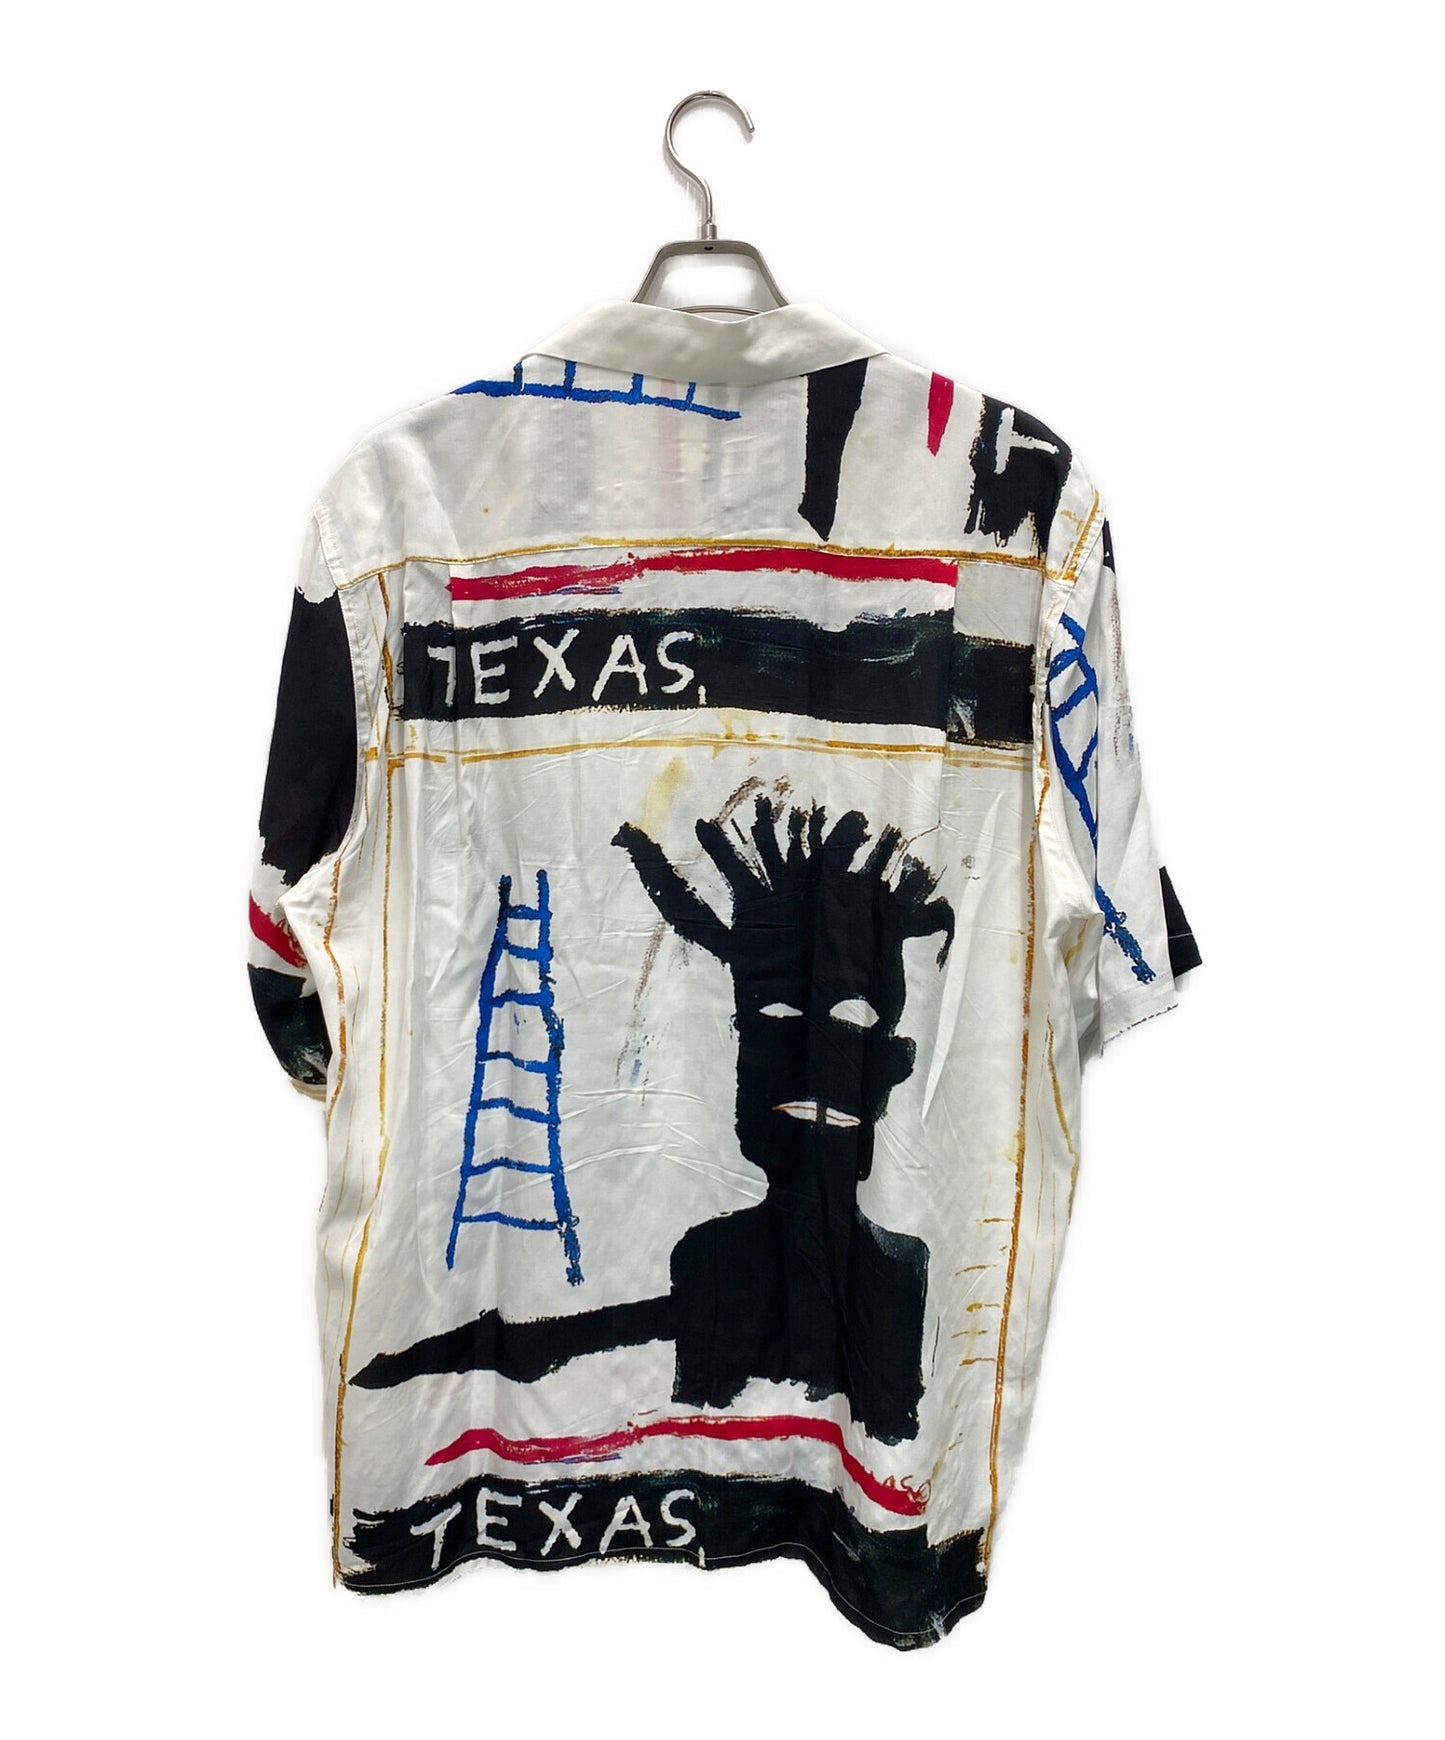 Wacko Maria Hawaiian襯衫類型2 Basquiat-WM-HI13